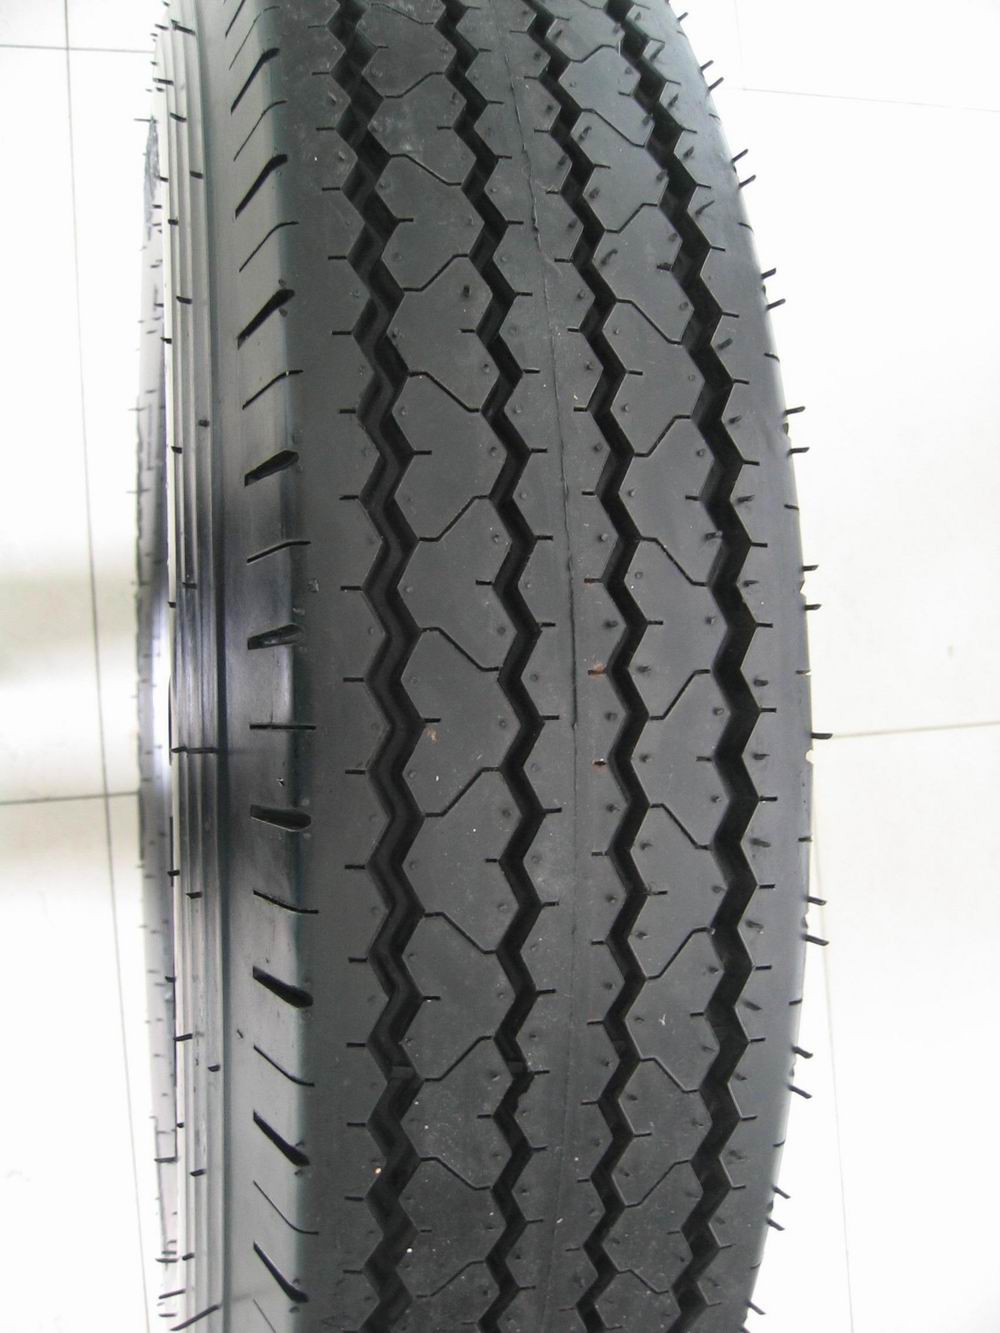 Truck tyre-heavy duty truck tyre and light truck tyre